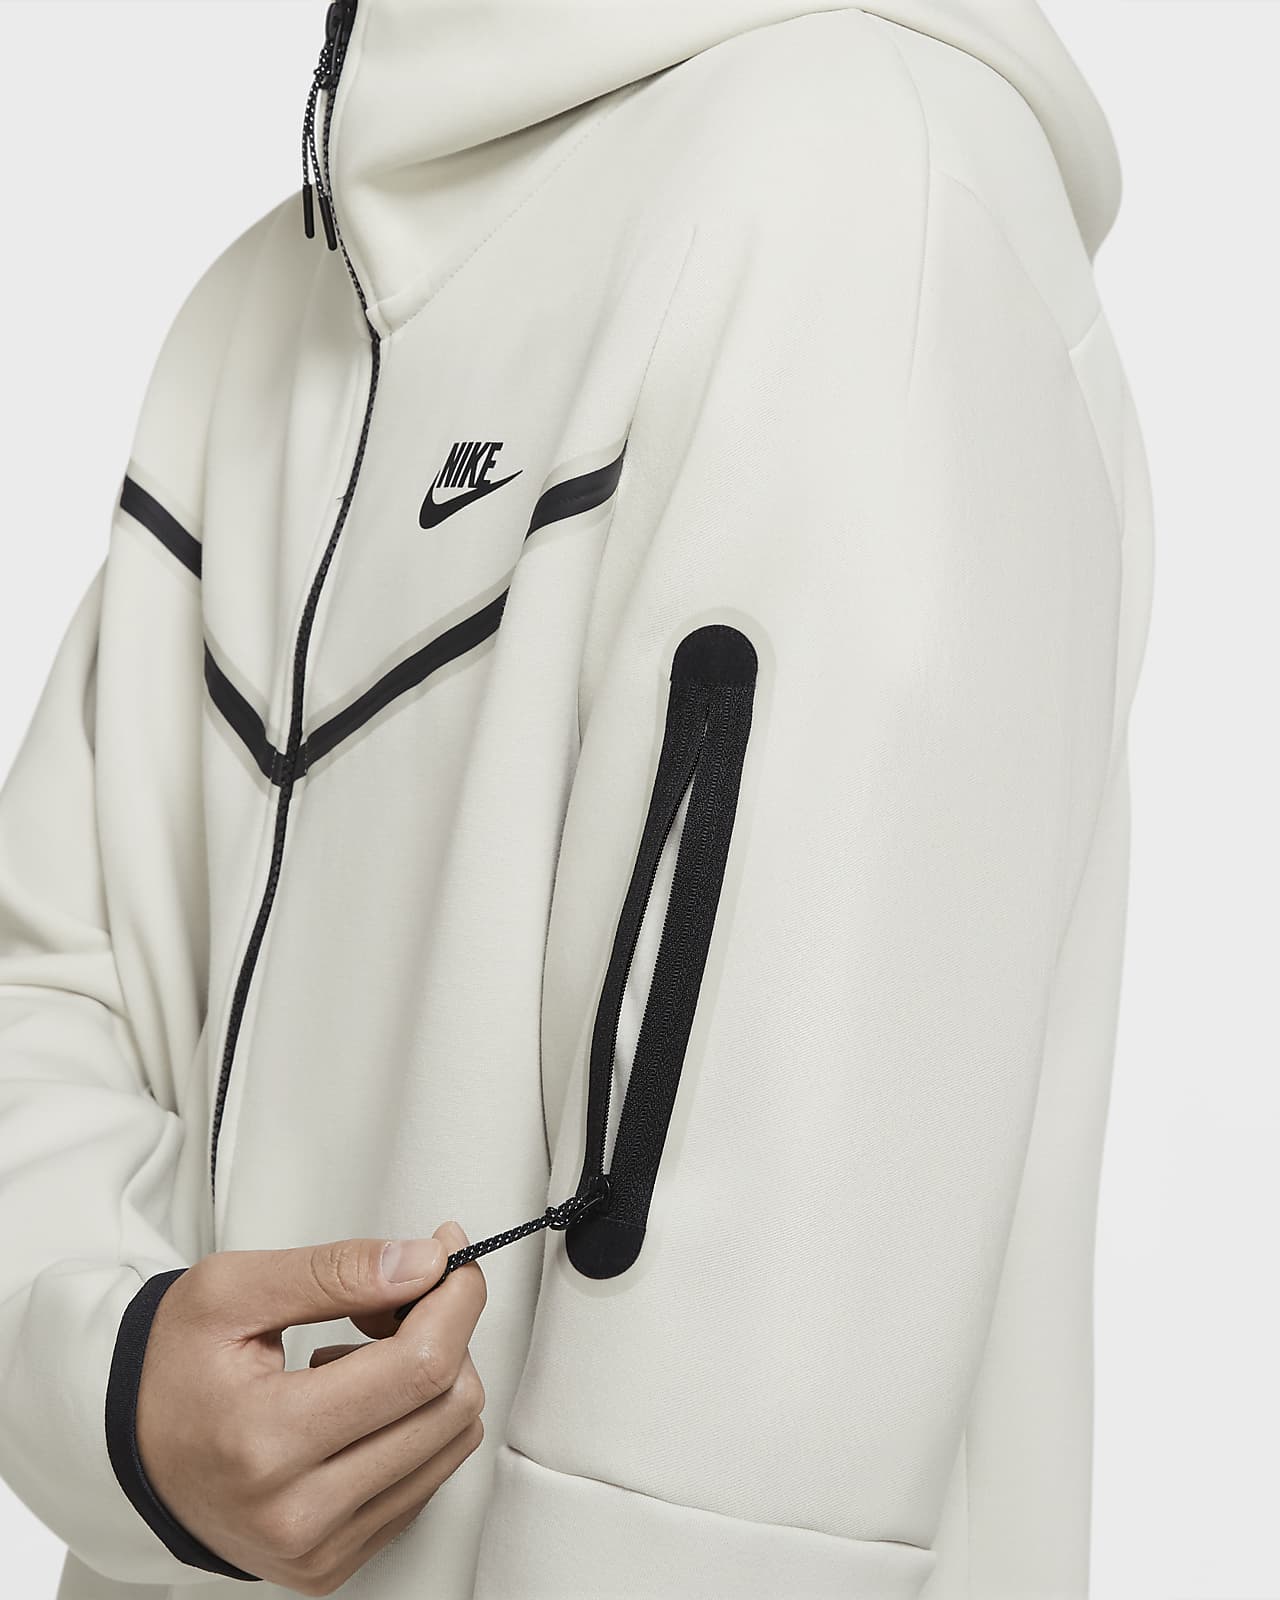 Nike Sportswear Tech Fleece Men's Full-Zip Hoodie. Nike.com